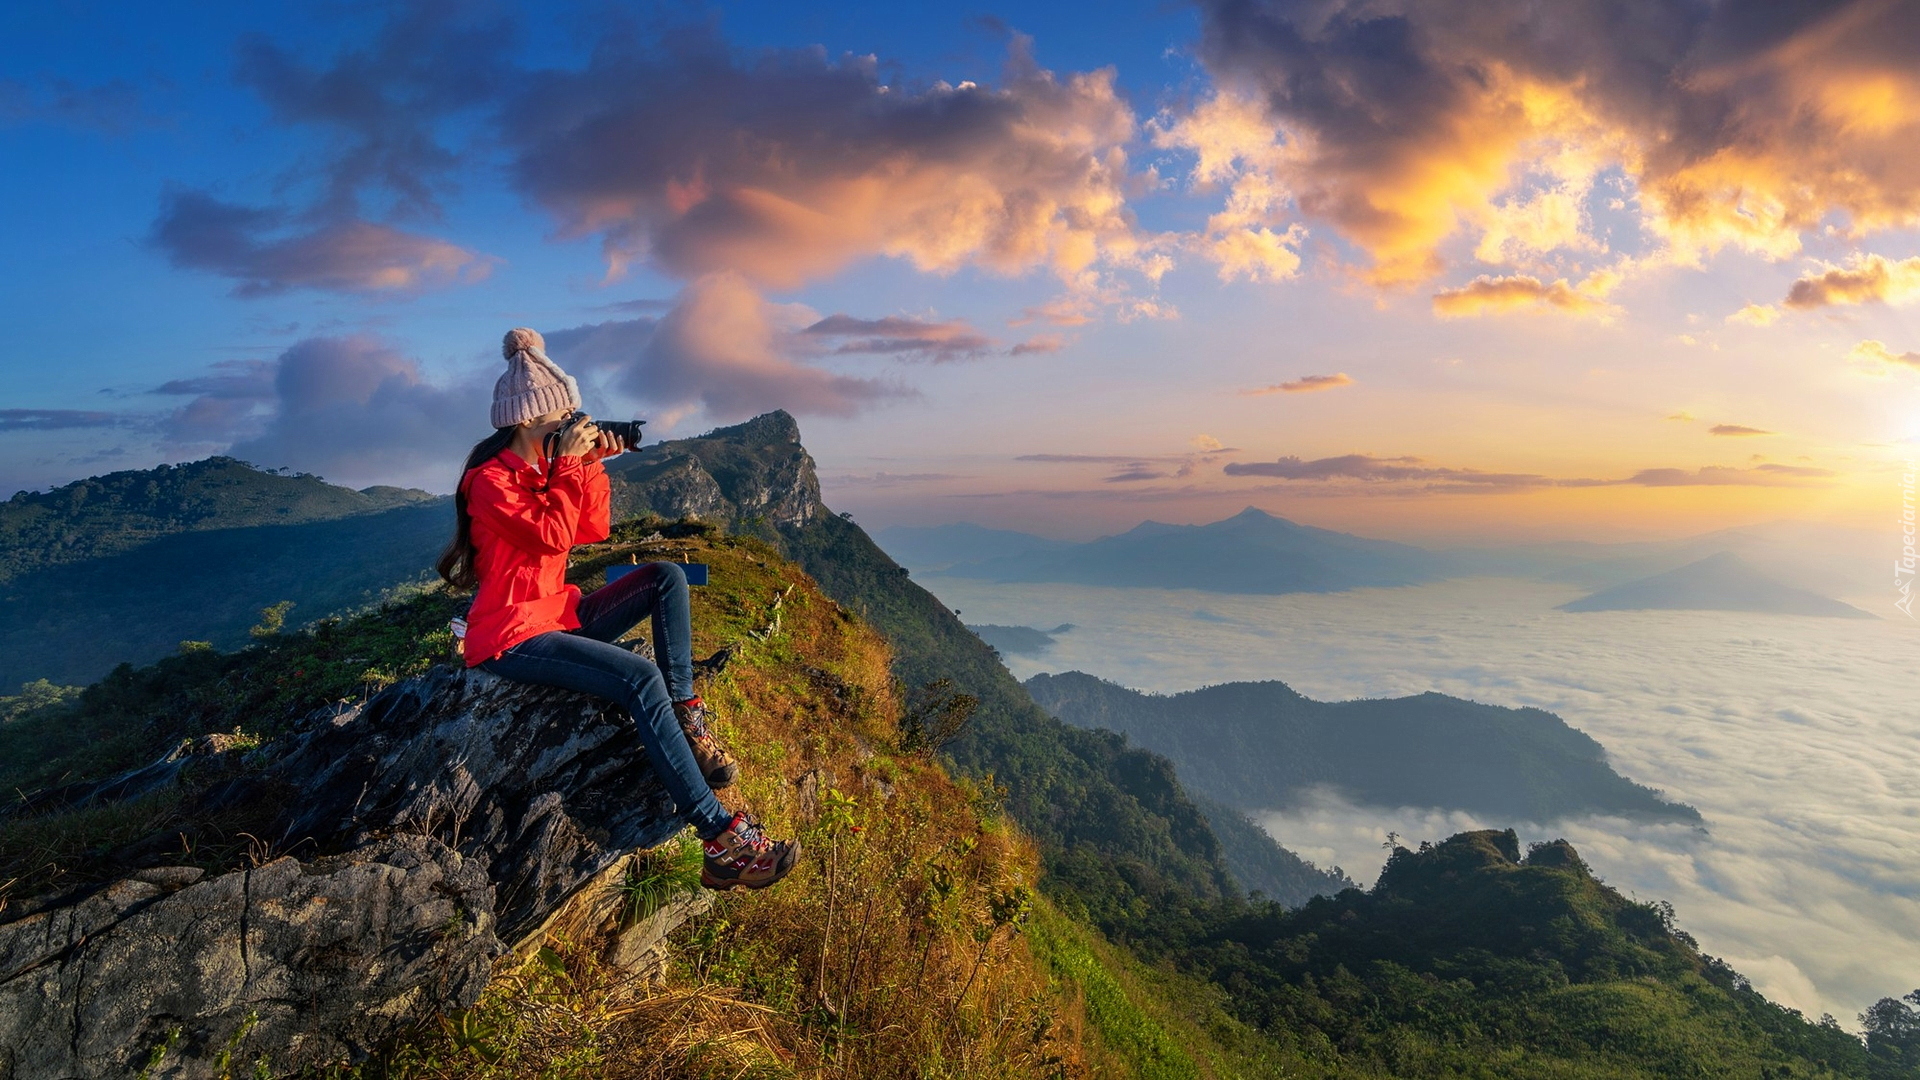 Kobieta, Turystka, Czapka, Aparat fotograficzny, Skały, Góry, Doi Pha Mon, Chiang Rai, Tajlandia